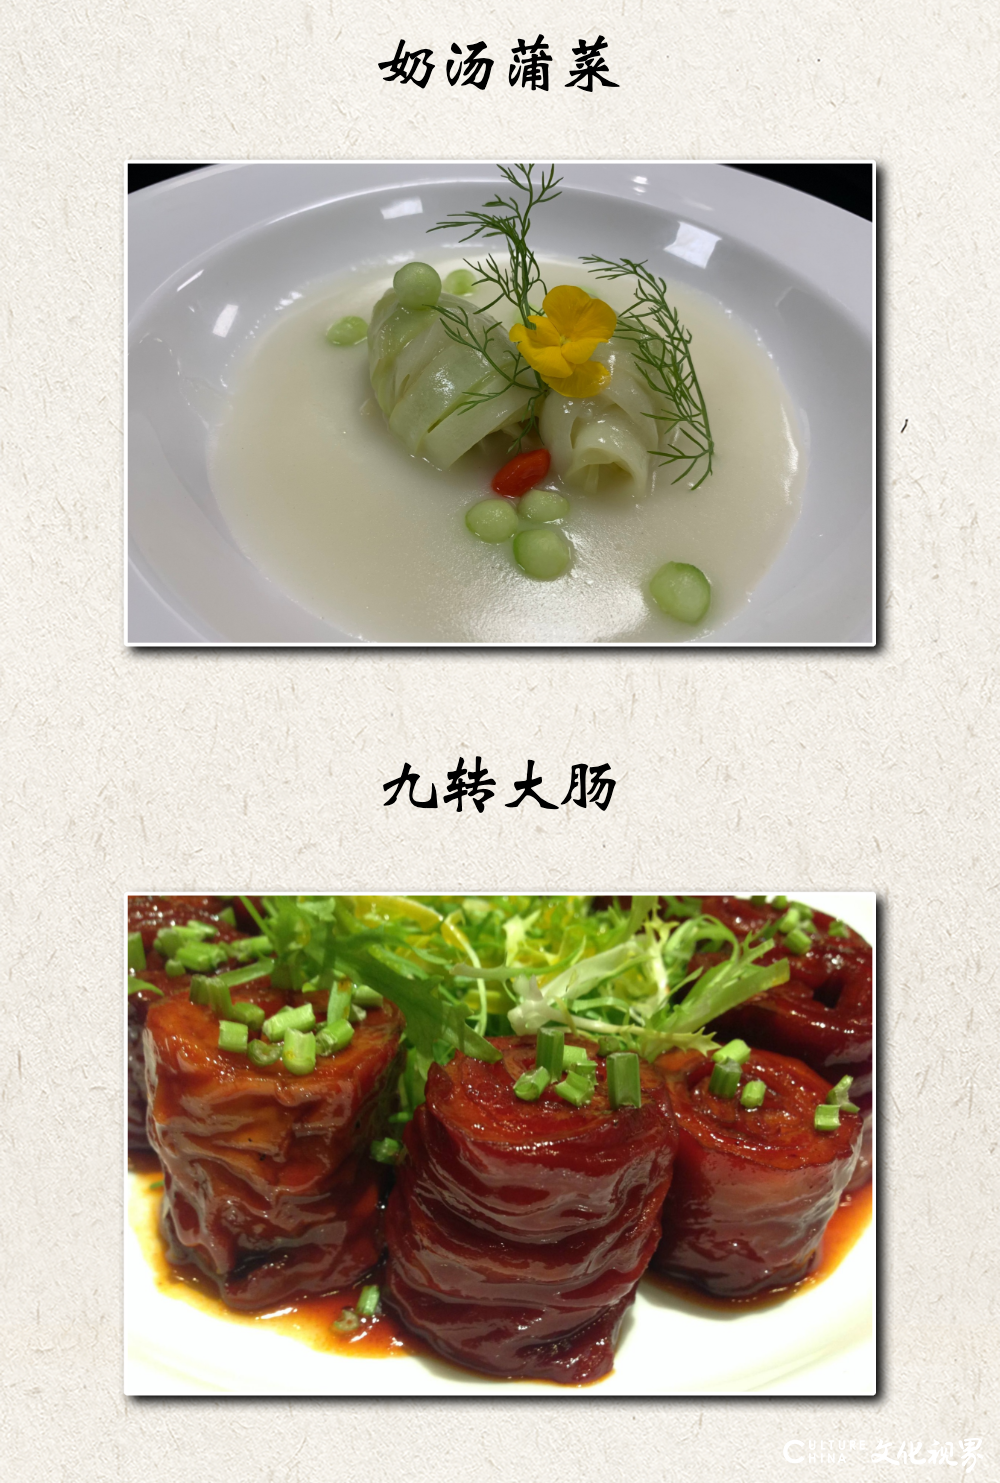 “健康饮食引领者”——济南泉城大酒店精品鲁菜美食月邀您共品佳肴